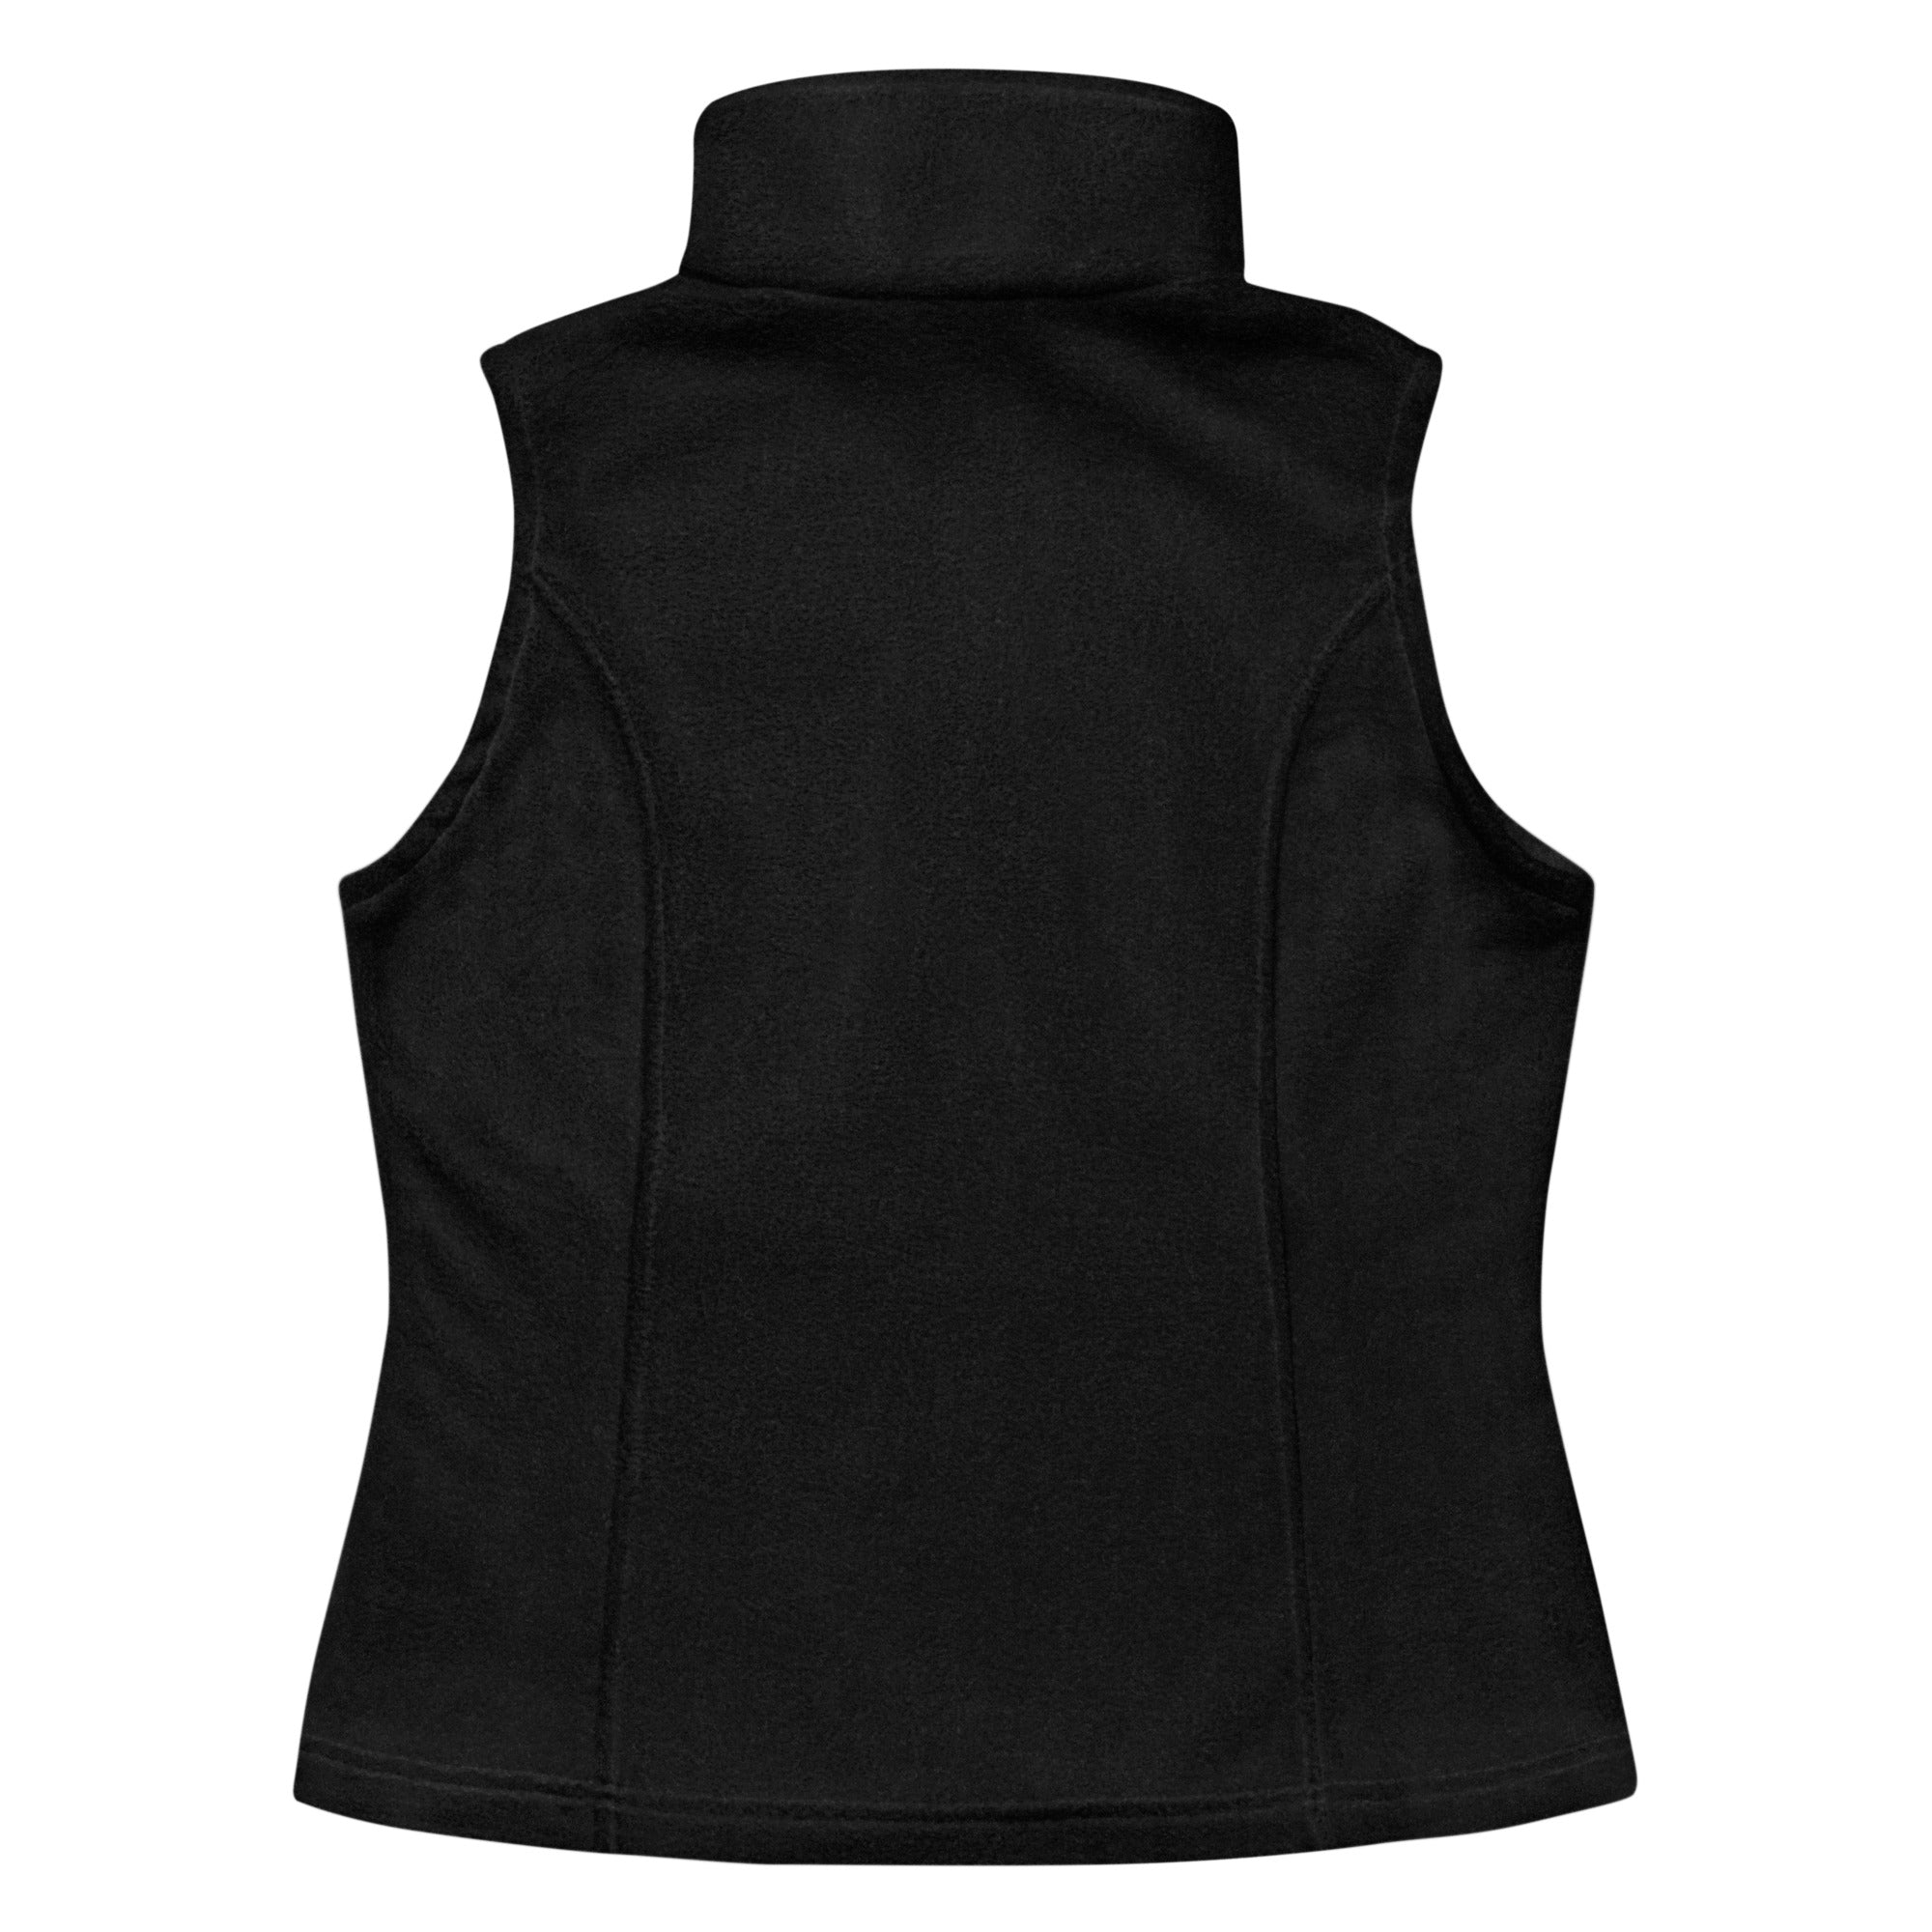 Penn Yan Women’s Columbia Fleece Vest